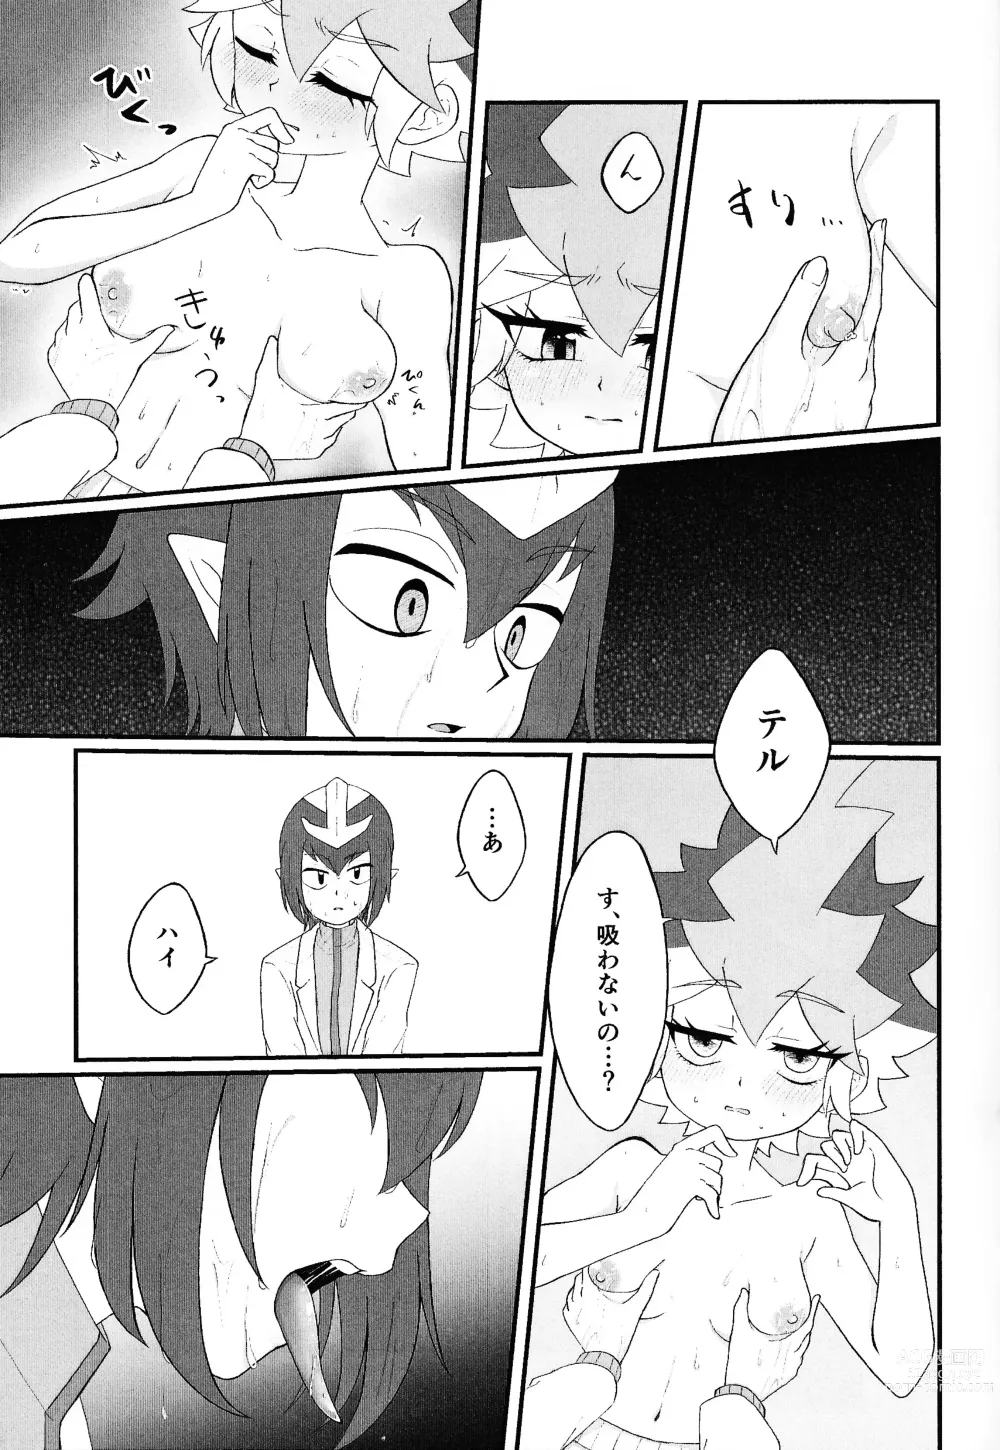 Page 18 of doujinshi Pandoranohako ka kindan no kajitsu ka